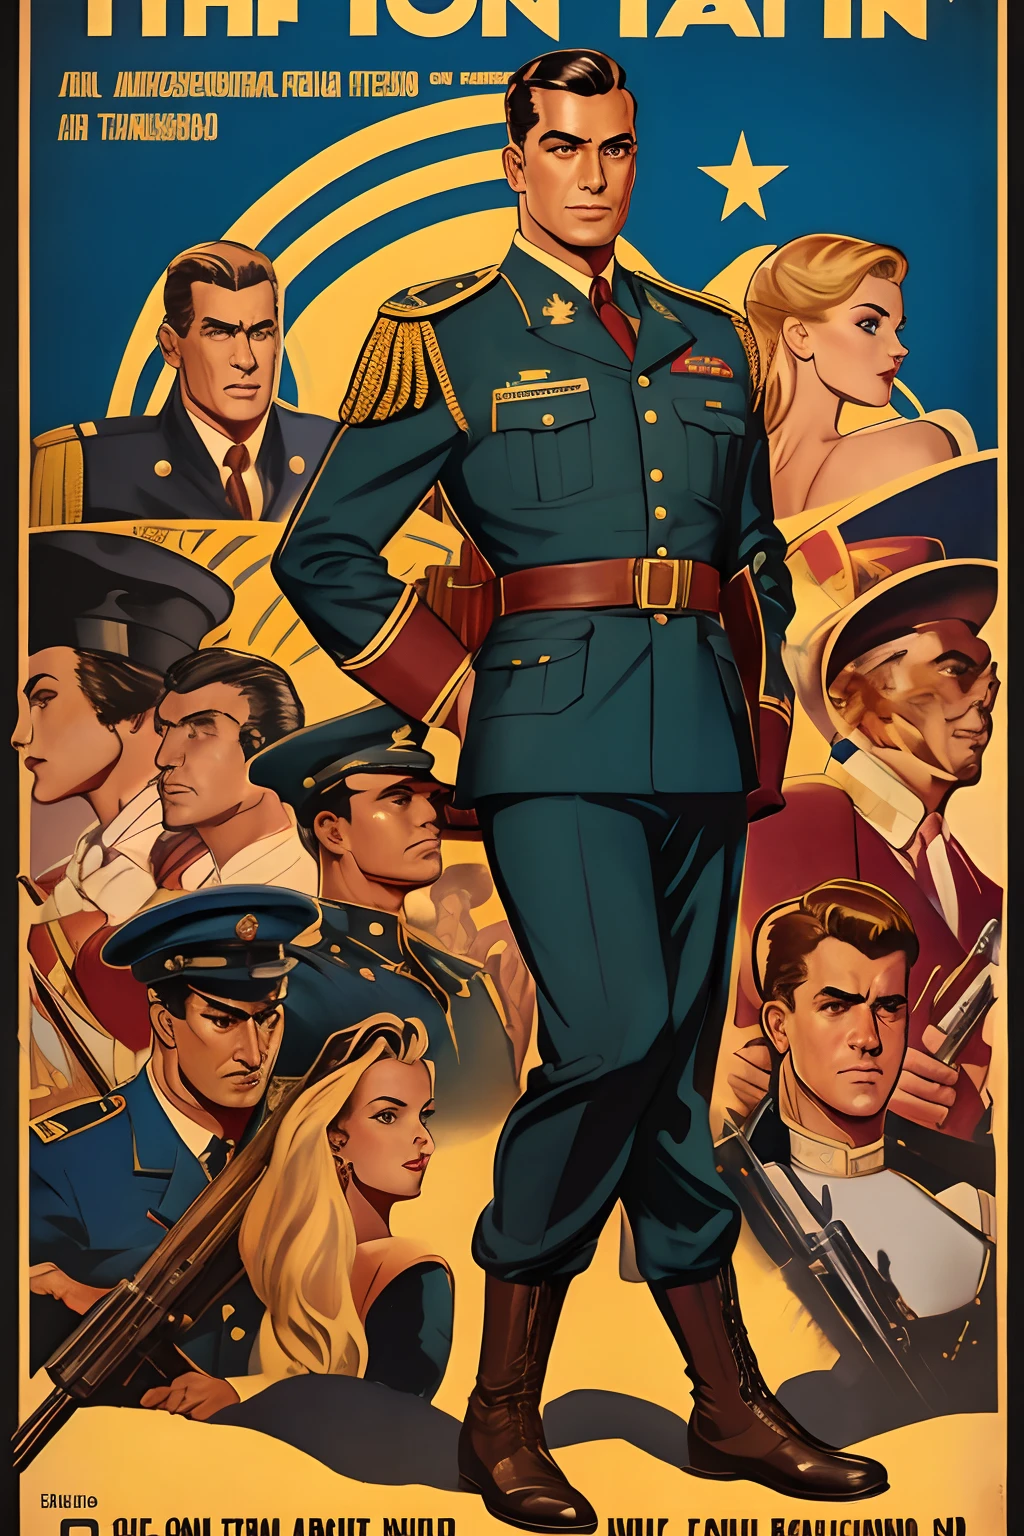 约翰·布西马的艺术灵感, 40 年代美国男人的复古海报,棕色短发, 黑眼睛, 修长的身材, 大肩膀, 穿着当时的传统军装, 第一营上尉, 好看, 大胆而聪明, 站起来, 全身在战争前线